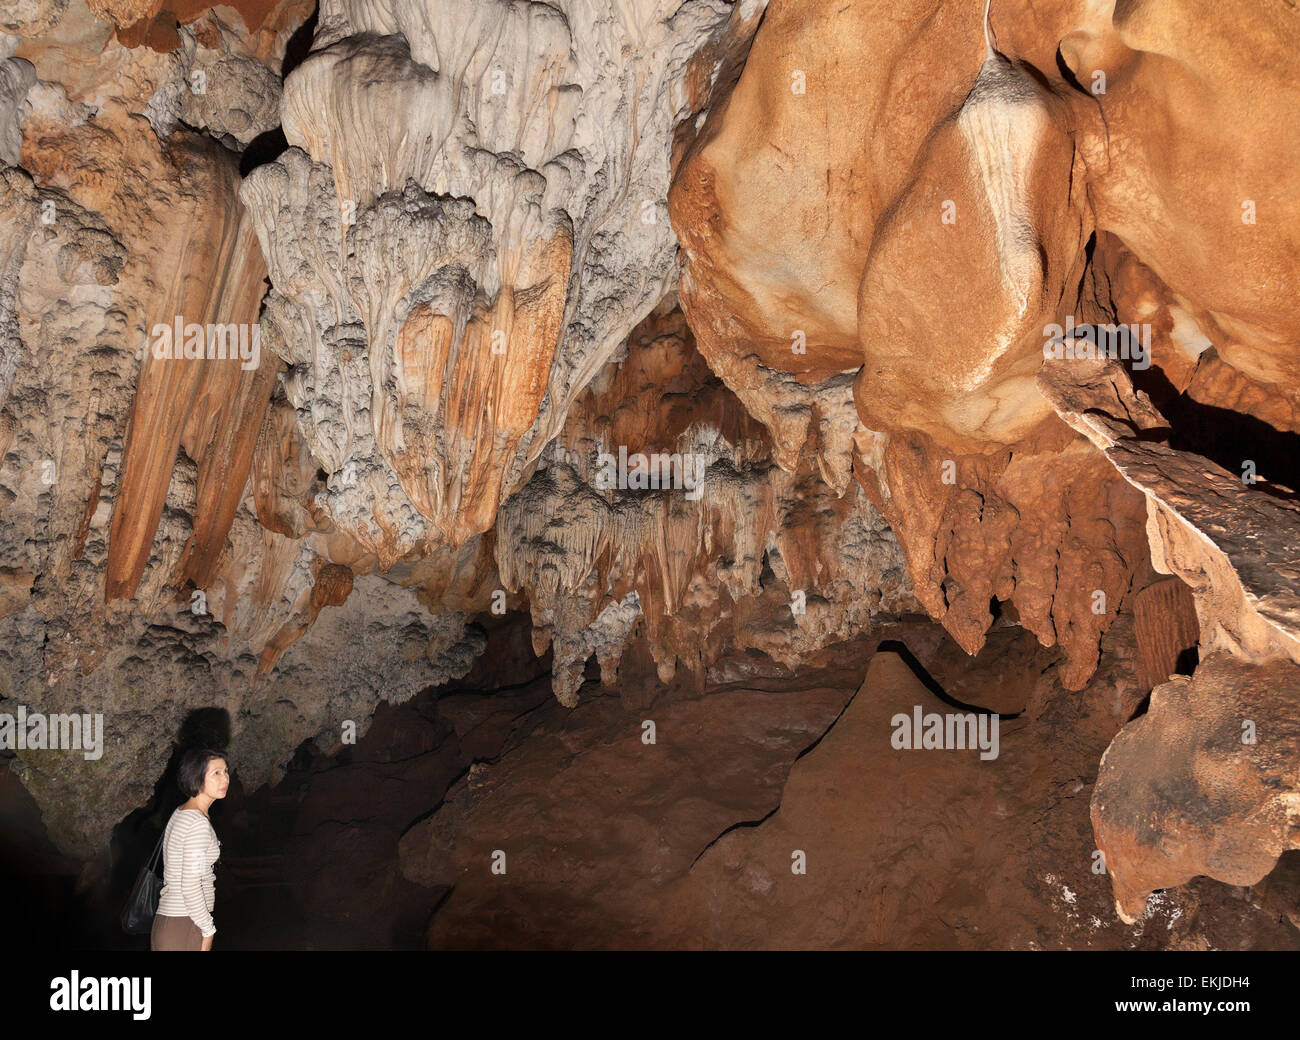 La grotte de Chiang Dao, Chiang Rai, Thaïlande du Nord. Formations calcaires. Dame visiteur admirant Banque D'Images